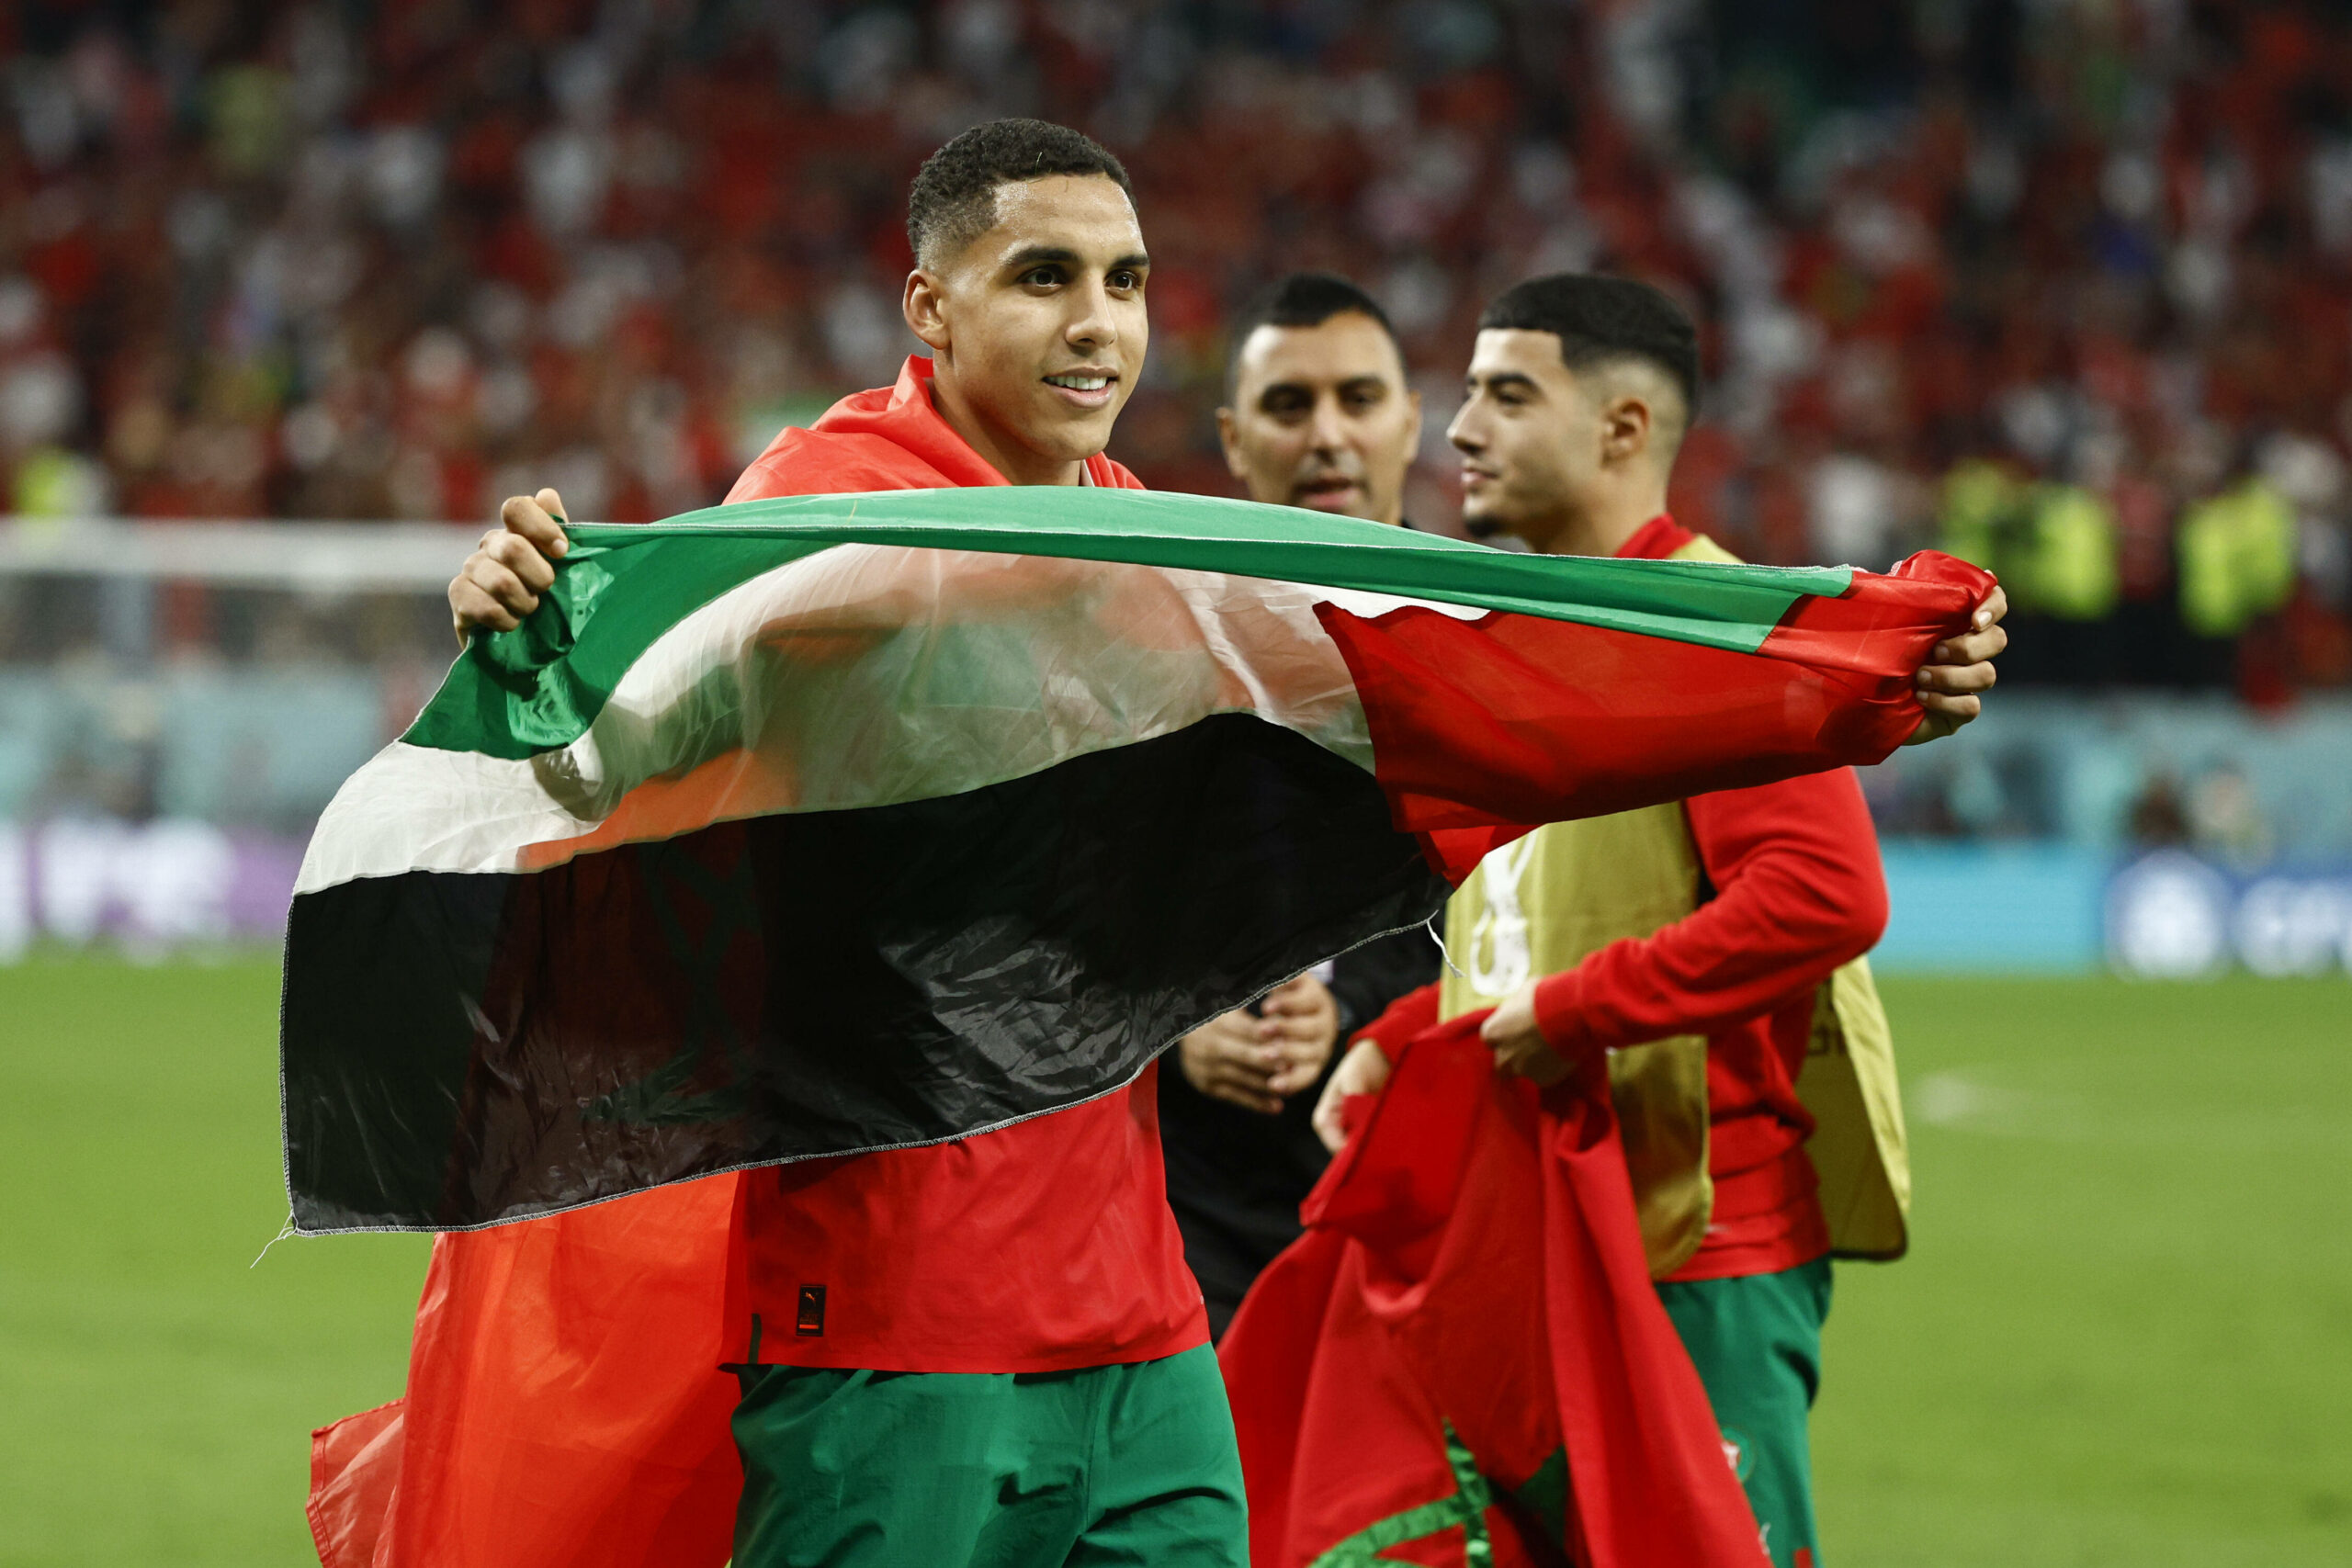 Marokkos Abdelhamid Sabiri feiert nach dem Sieg gegen Spanien mit einer palästinensischen Flagge.